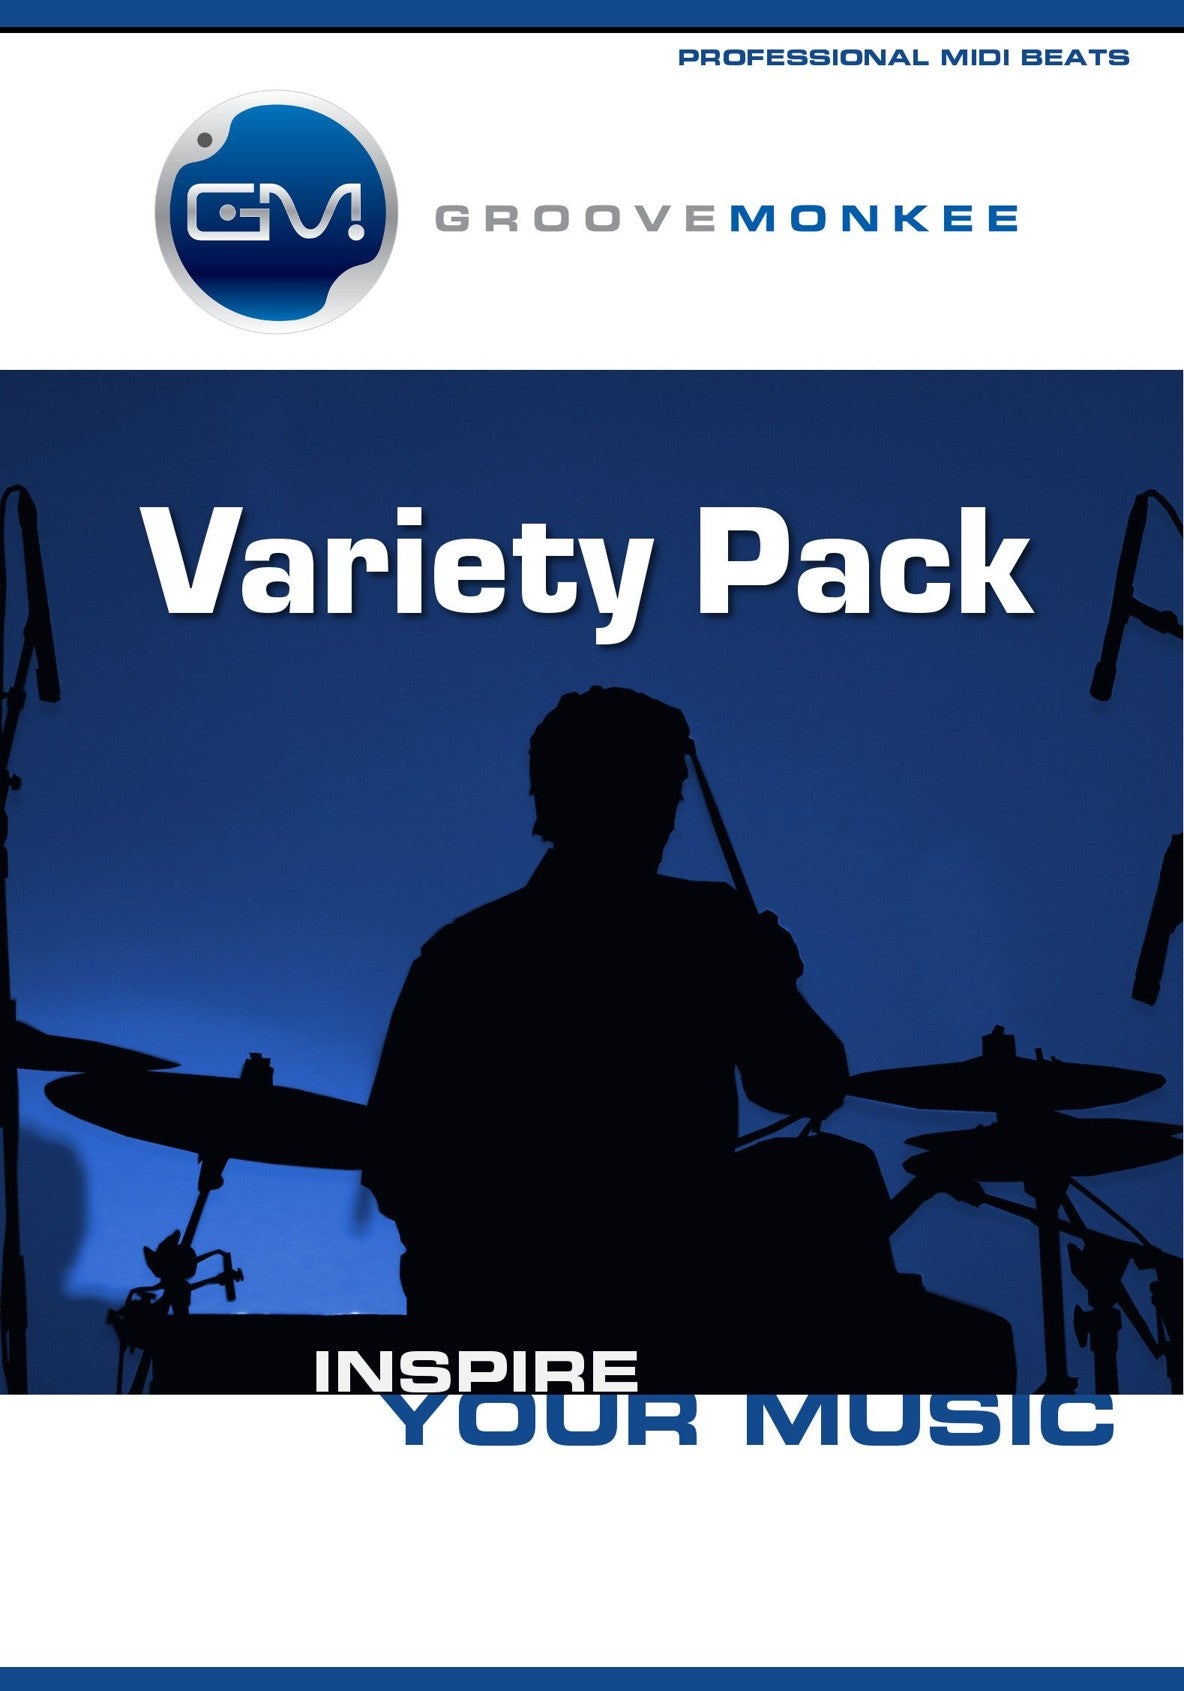 Variety Pack MIDI Loops